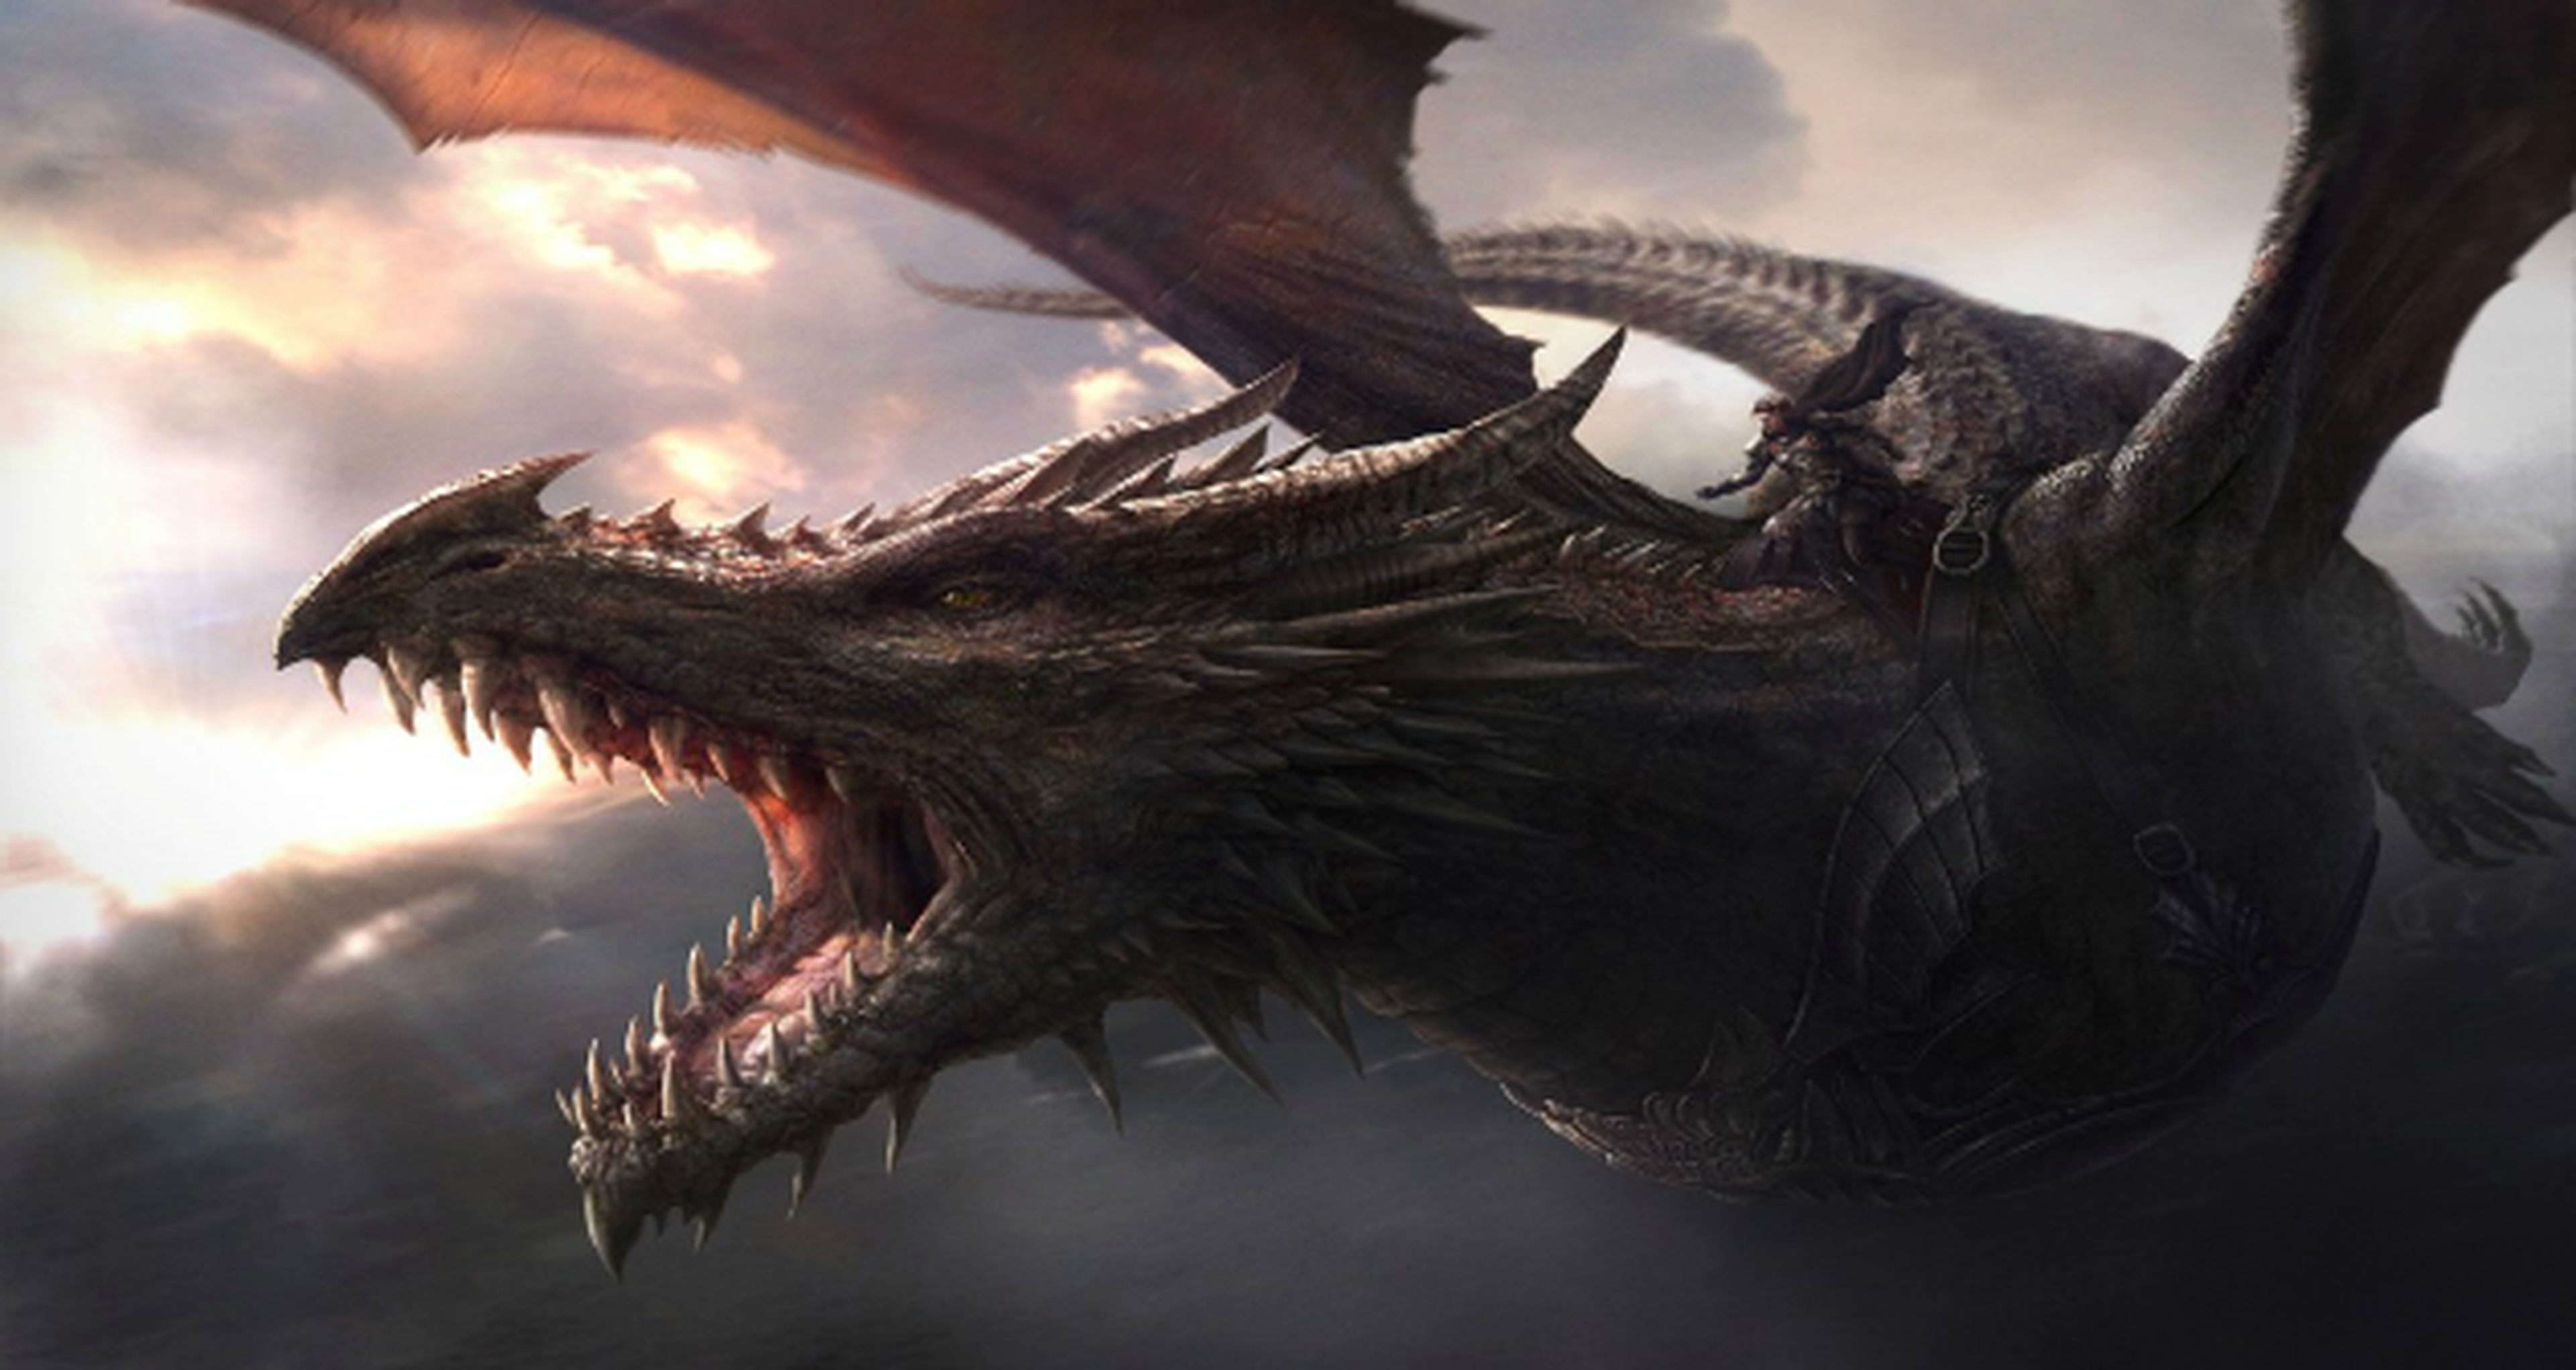 Comparativa de tamaño entre dragones del cine y videojuegos